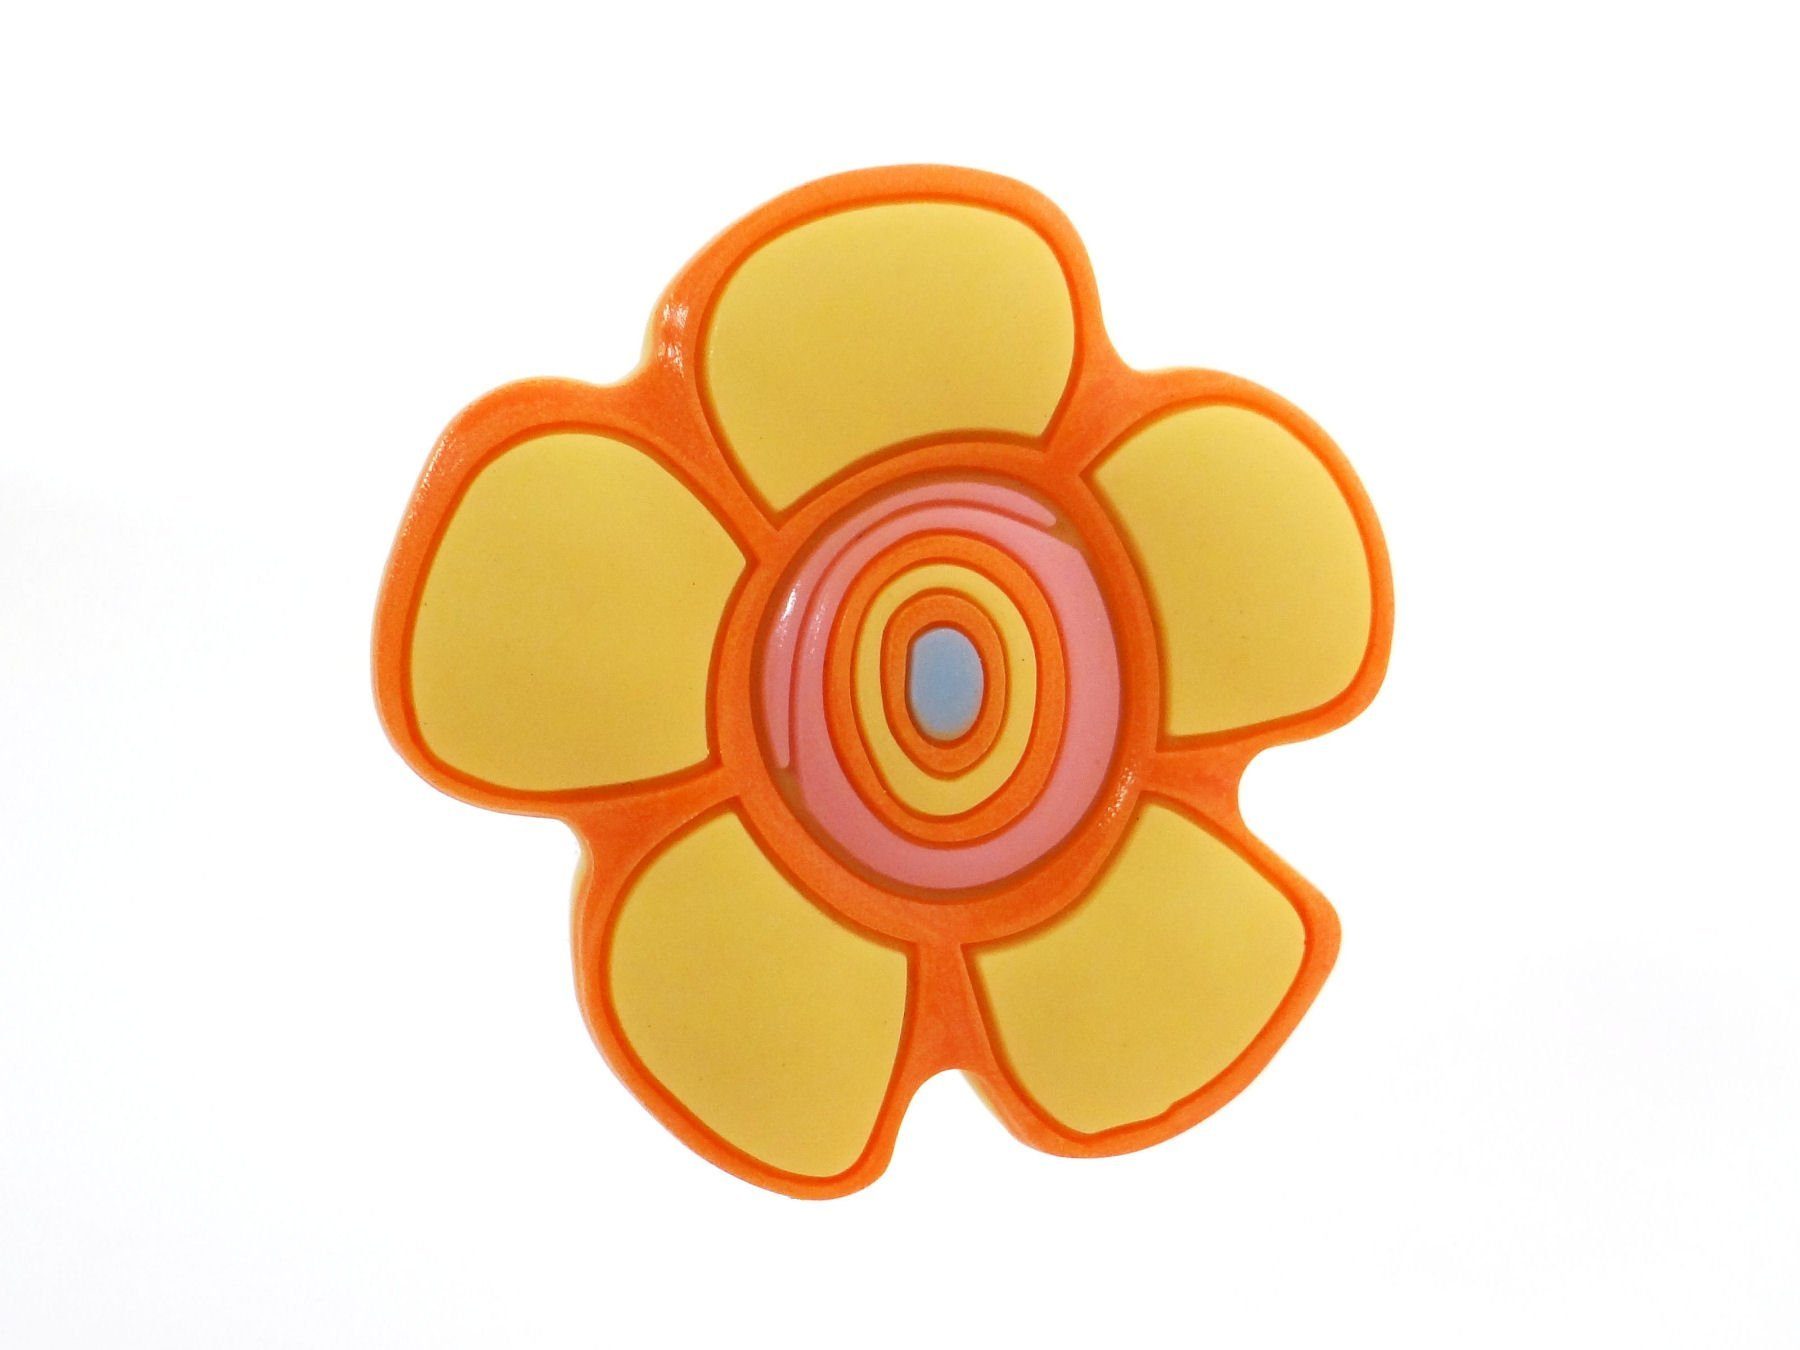 SO-TECH® Möbelknopf Kindermöbelknopf gelbe Blume aus Gummi, Knopf Knauf für Kinderzimmer incl. Schraube